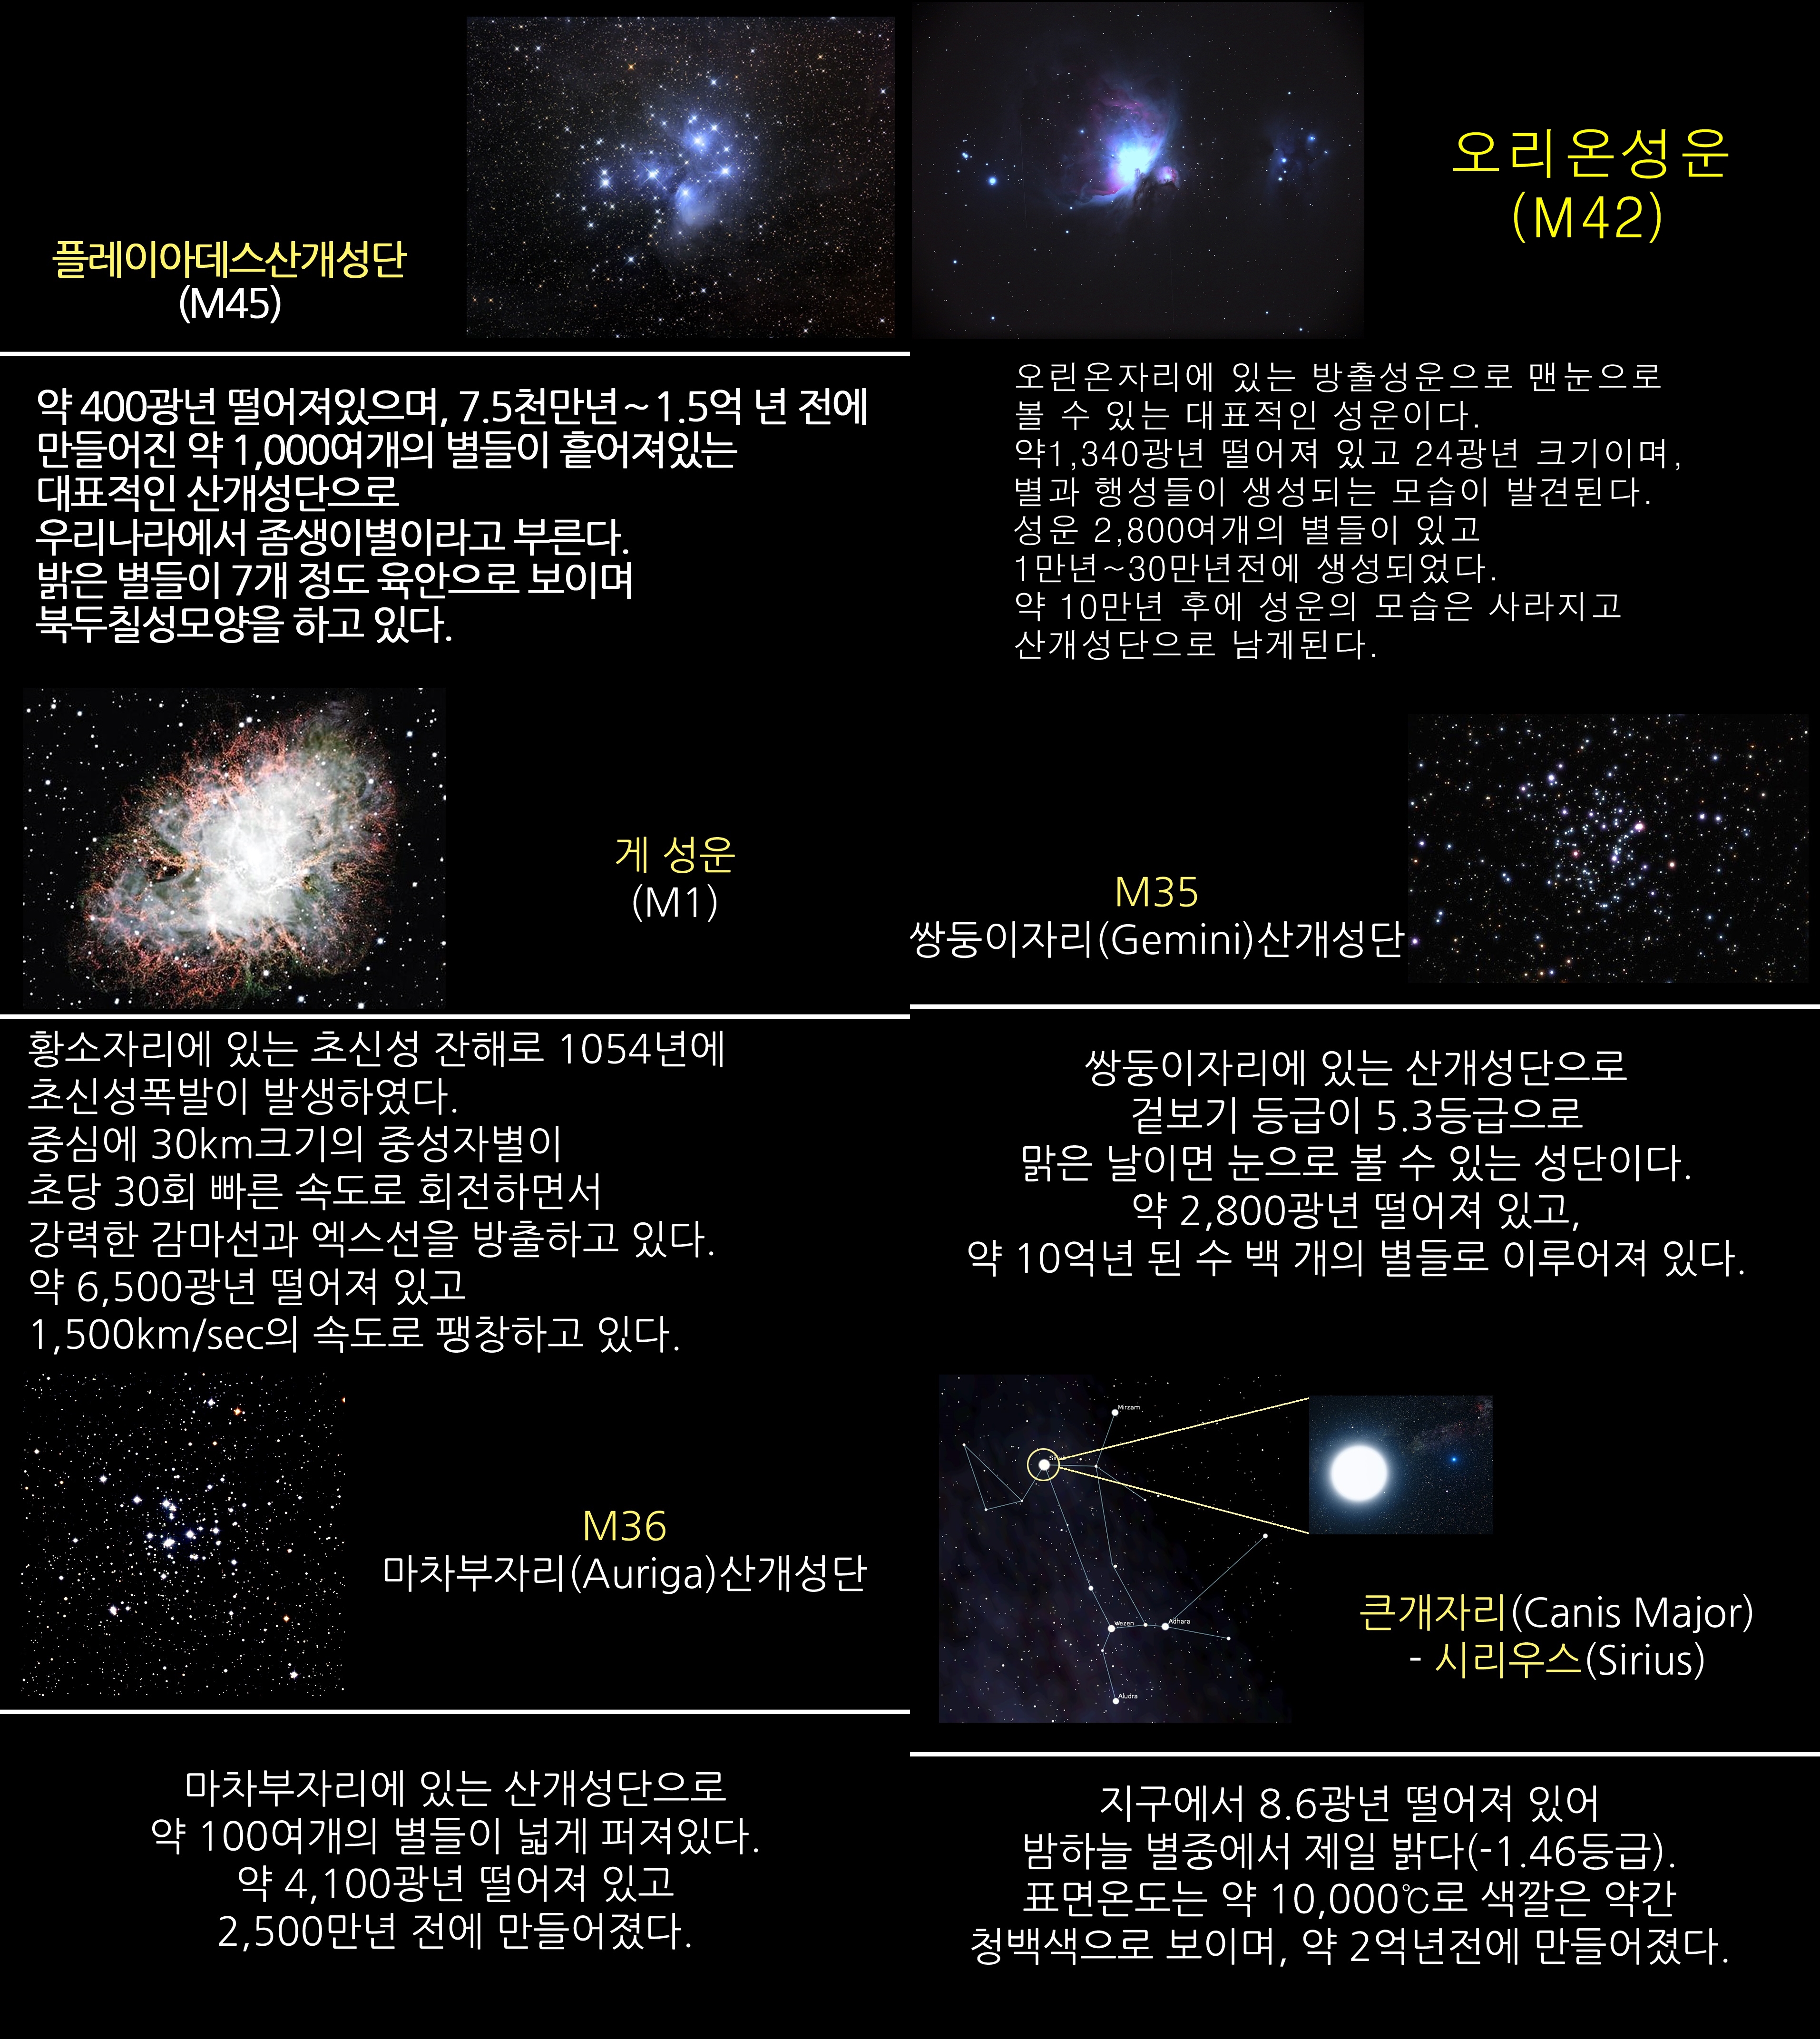 2018년 2월 주요 천체관측대상